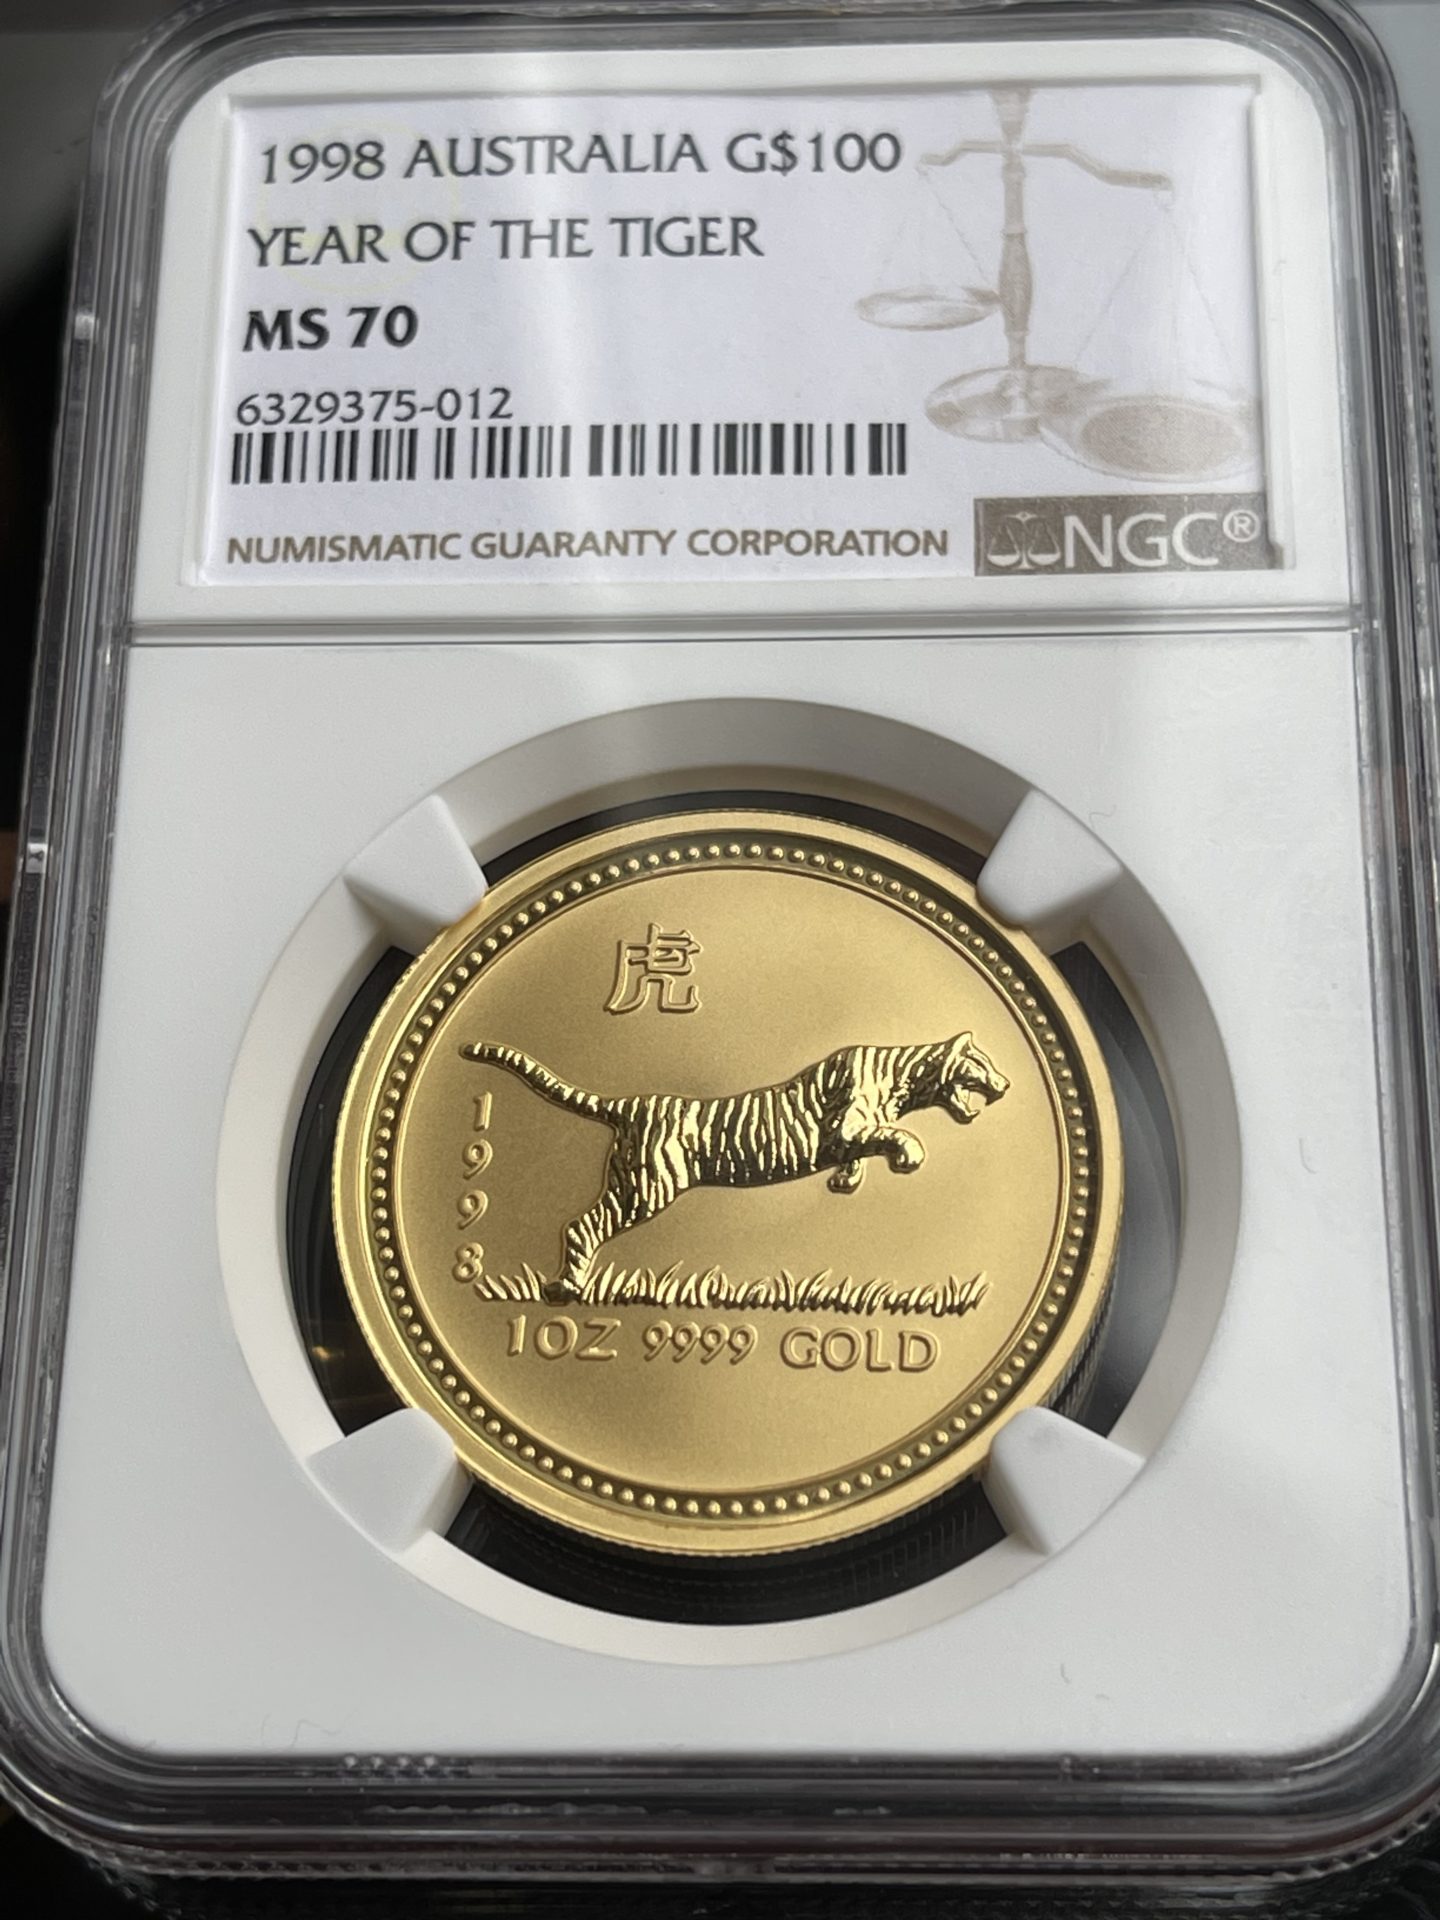 Australien – Lunar I Serie – Tiger – 1998 – 100 Dollar – NGC MS70 – 1oz Gold